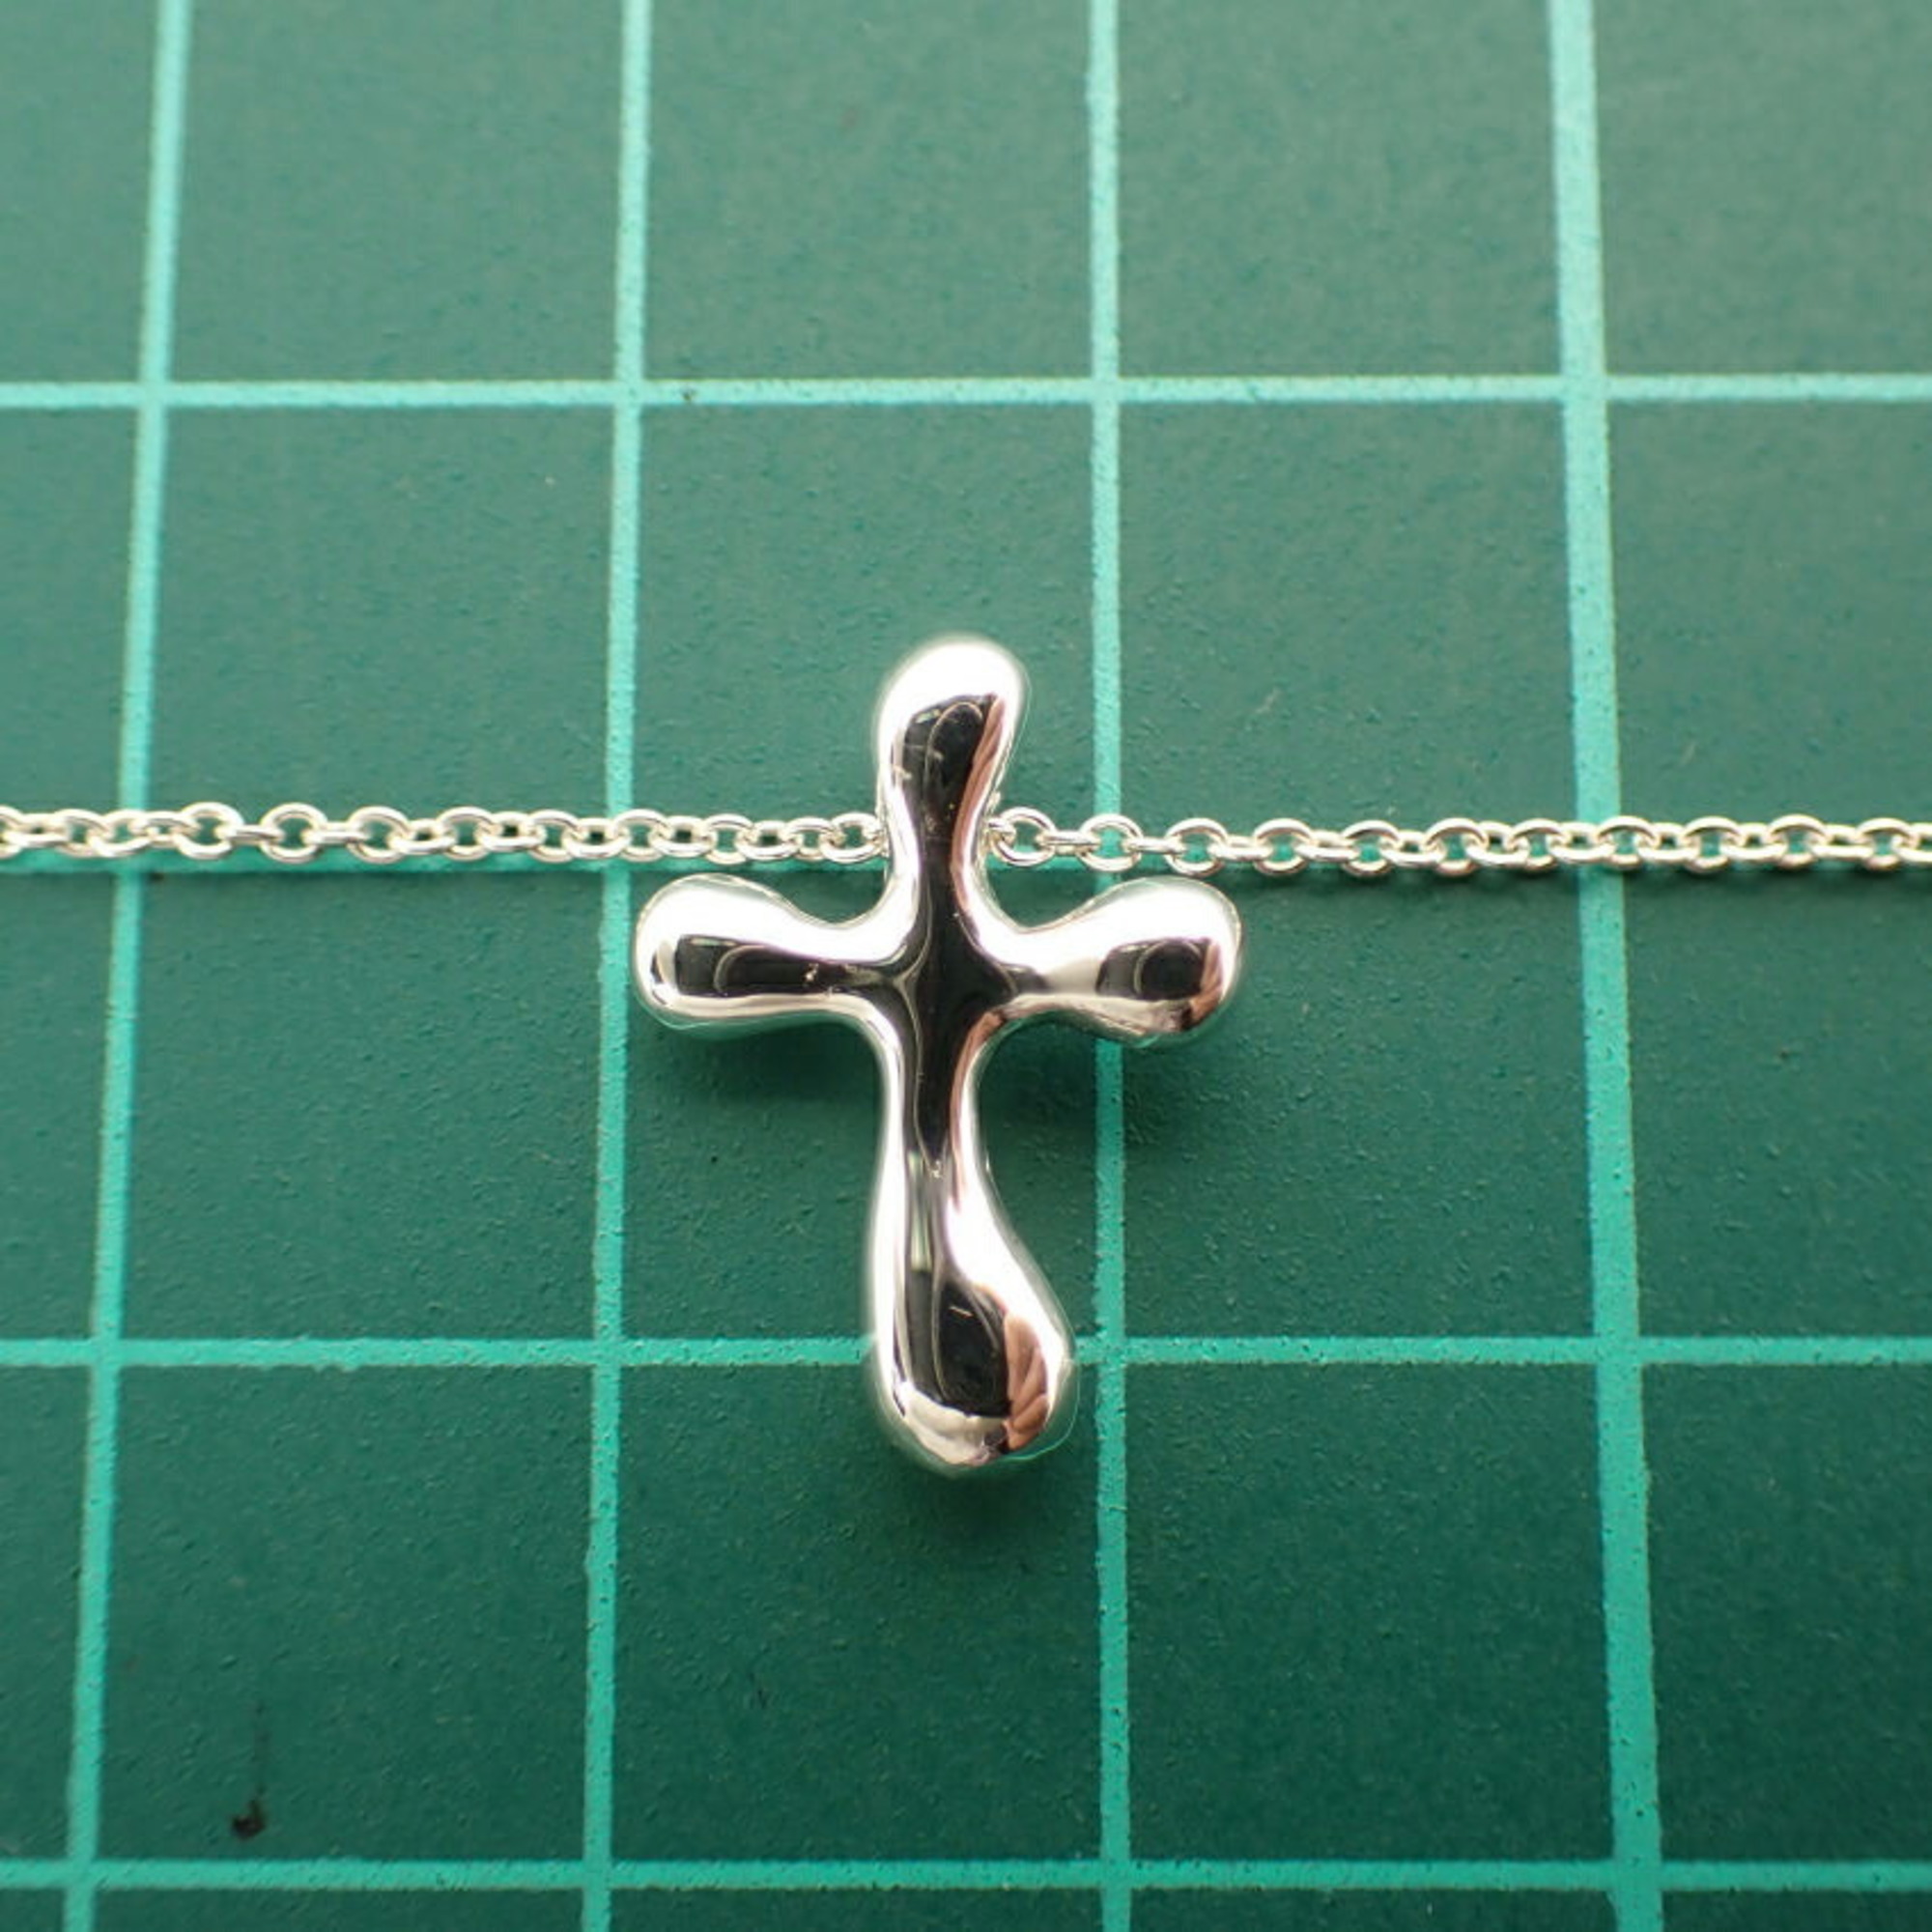 TIFFANY 925 teardrop cross pendant necklace